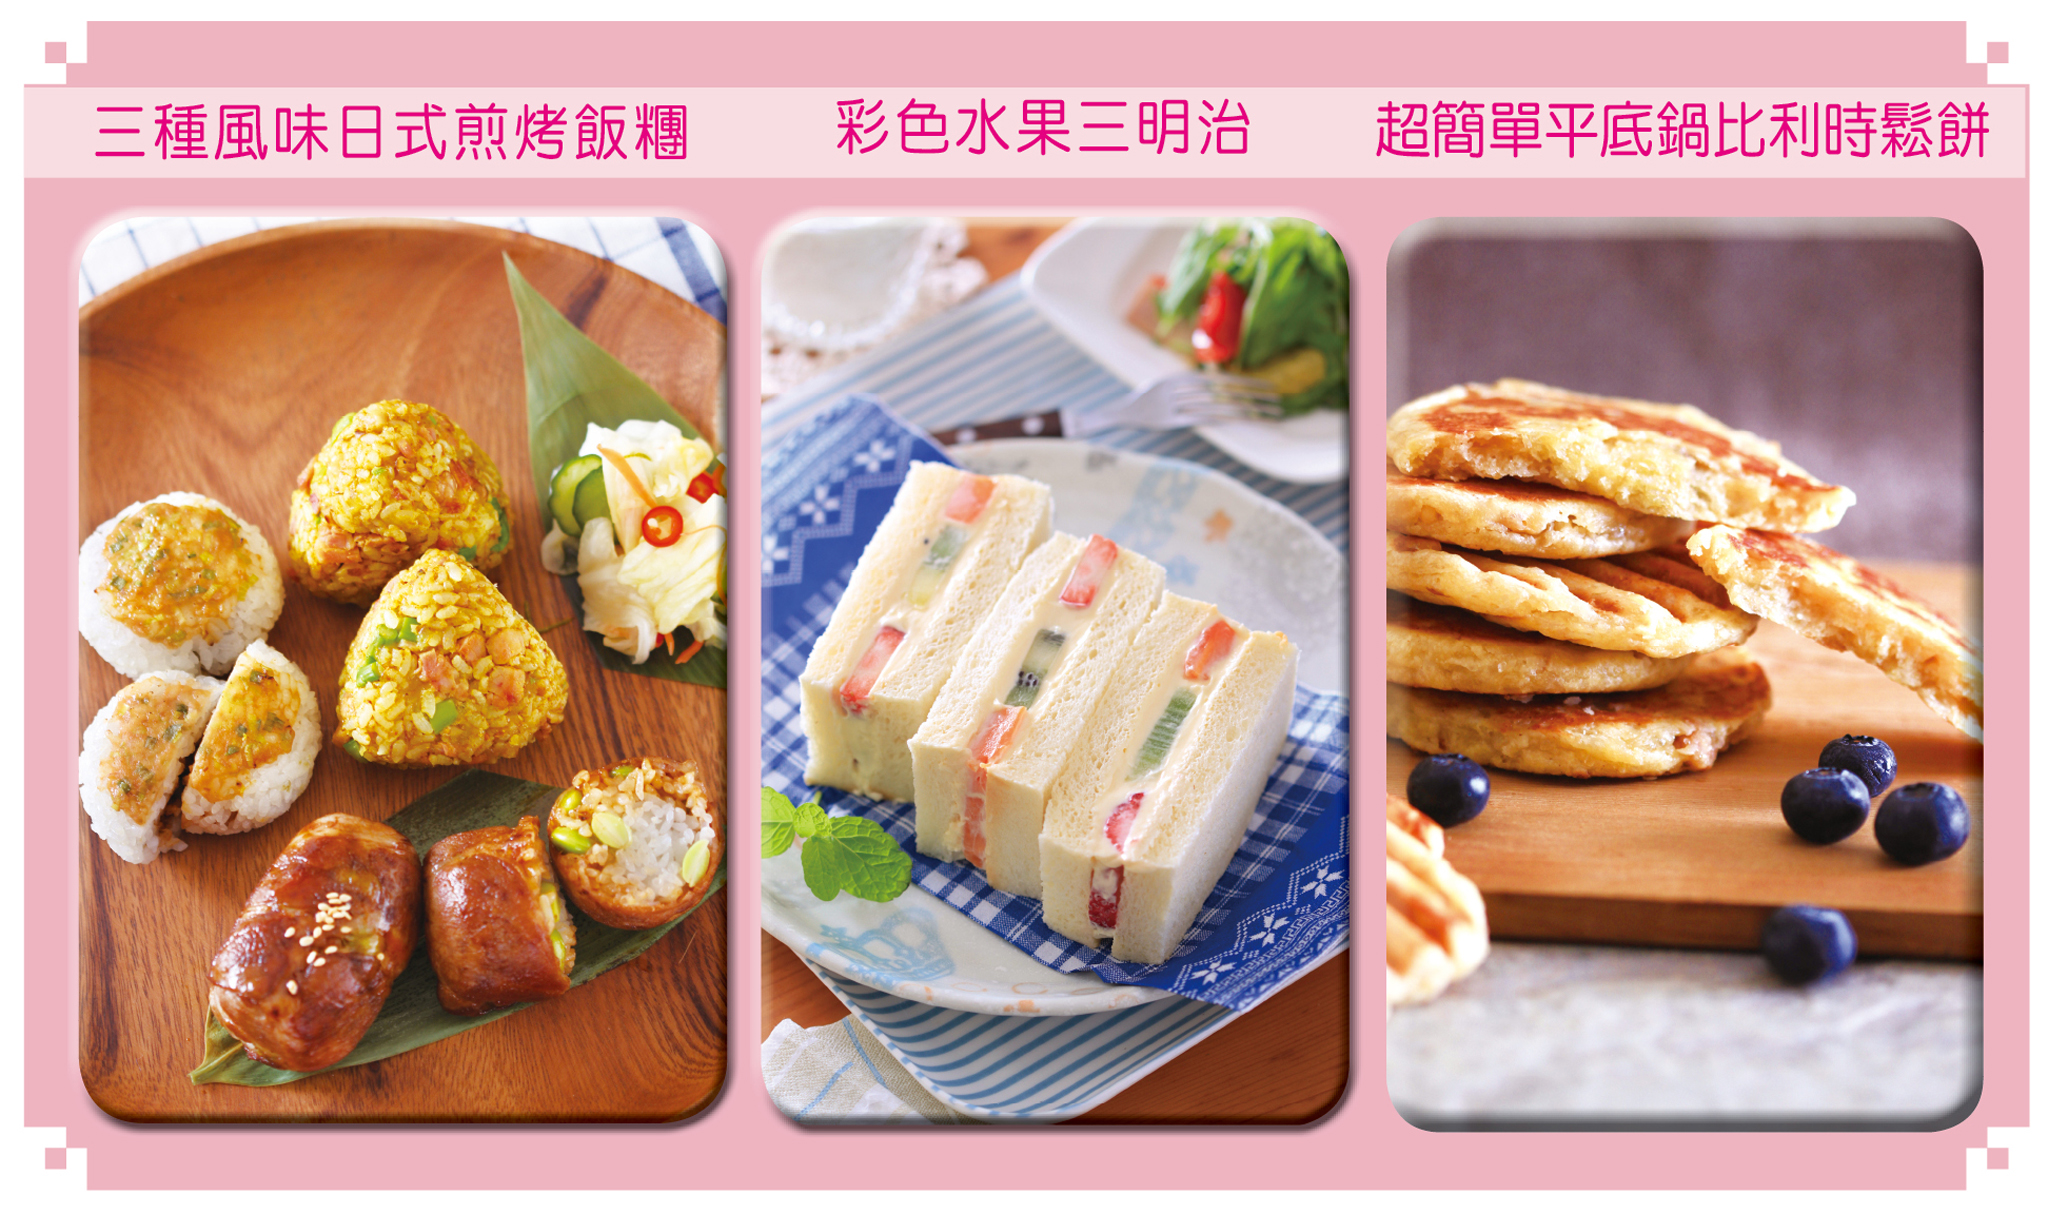 親子好「食」：三種風味日式煎烤飯糰、彩色水果三明治、超簡單平底鍋比利時鬆餅。